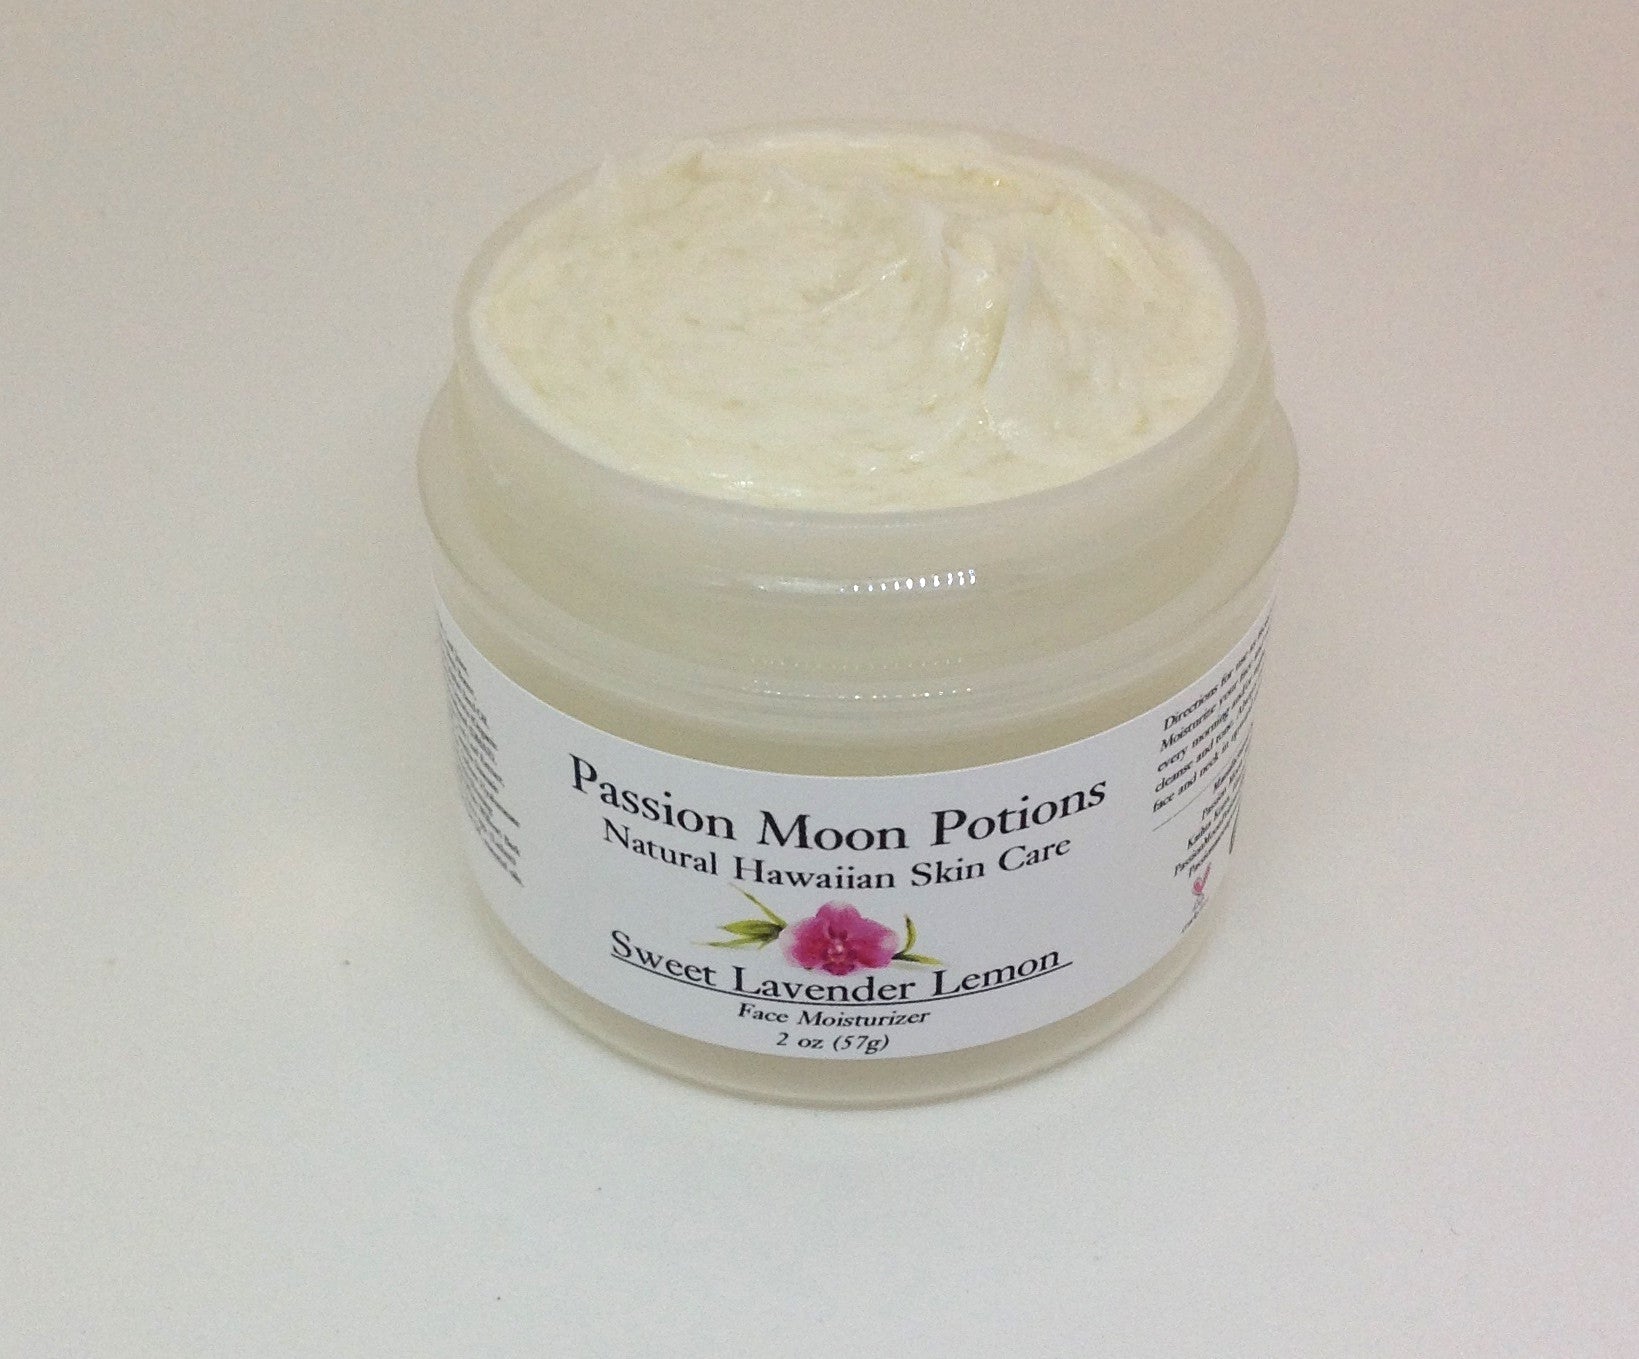 Sweet Lavender Lemon Face Moisturizer - Passion Moon Potions - 2